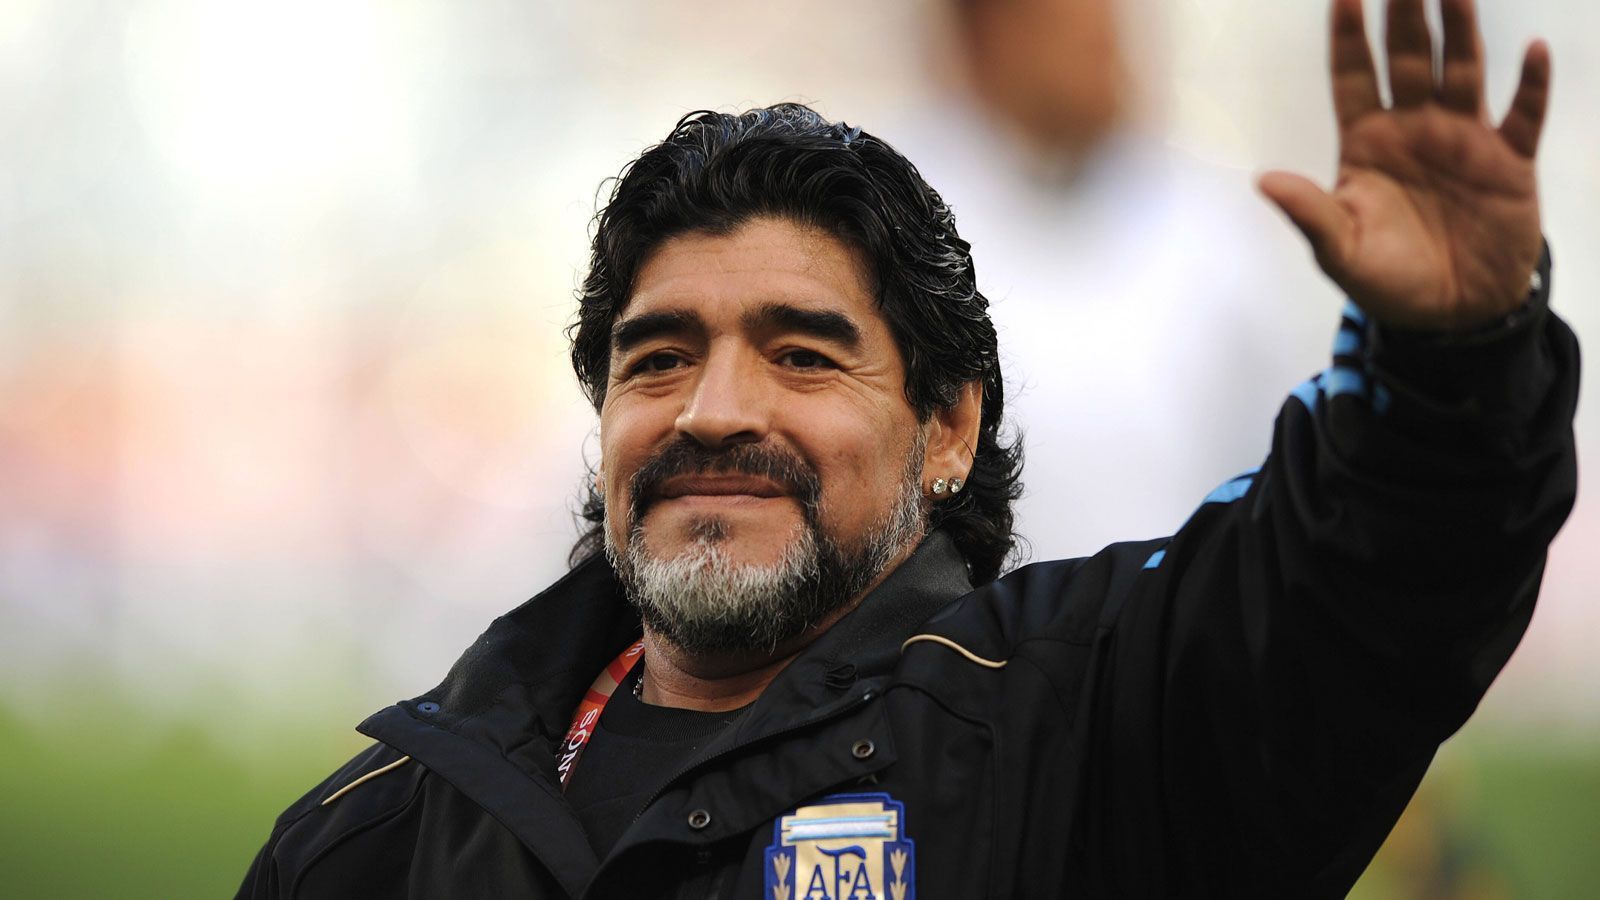 
                <strong>Trainer der argentinischen Nationalmannschaft</strong><br>
                Dennoch kehrte er später als Trainer zurück und übernahm 2008 die argentinische Nationalmannschaft. Zwei Jahre später führte er die Albiceleste bei der WM 2010 bis ins Viertelfinale, das sie mit 4:0 gegen Deutschland verloren.
              